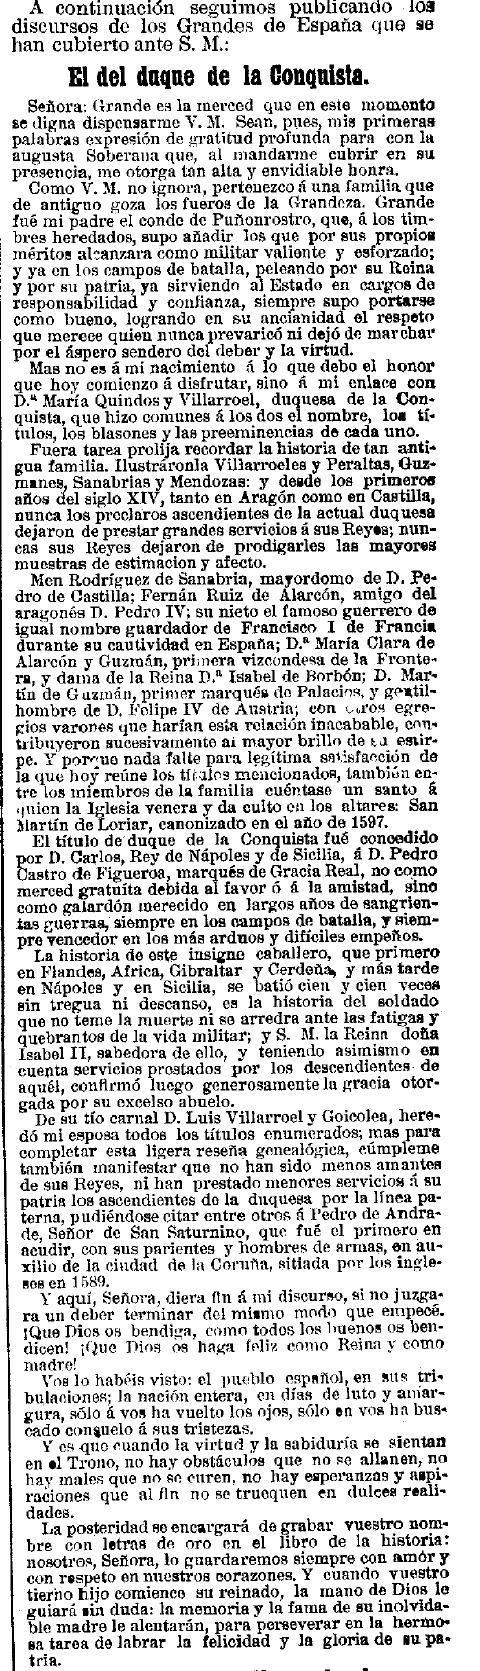 discurso-do-marques-consorte-de-san-sadurnino-diante-da-raina-maria-cristina-la-epoca-16-4-1891